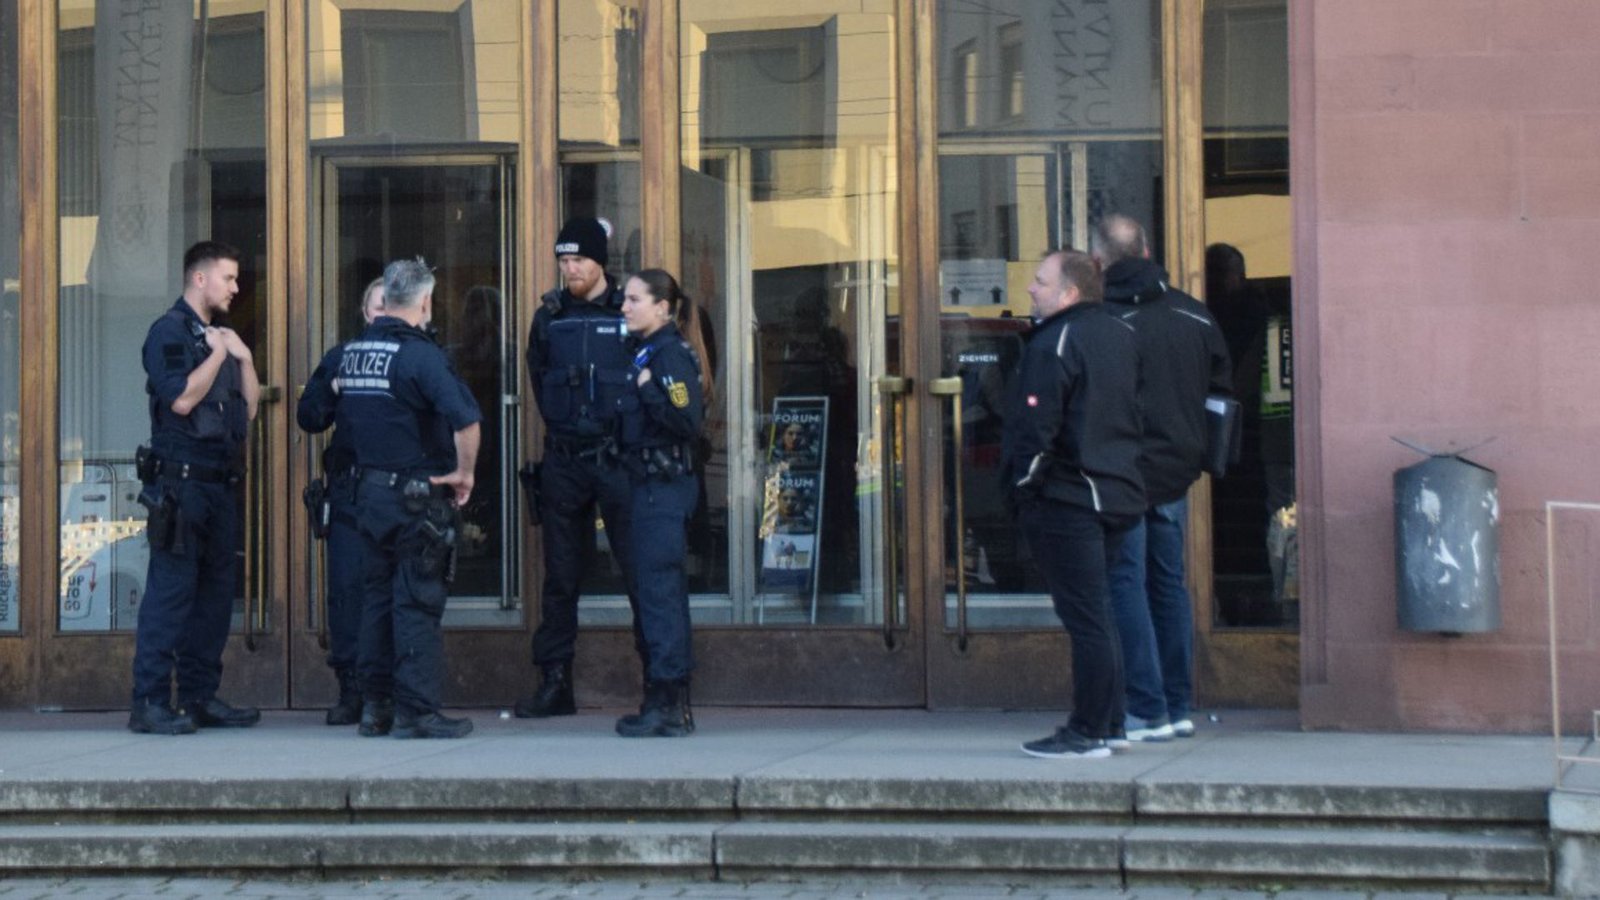 Polizisten stehen vor dem Eingang der Universitätsbibliothek in Mannheim.Foto: dpa/René Priebe